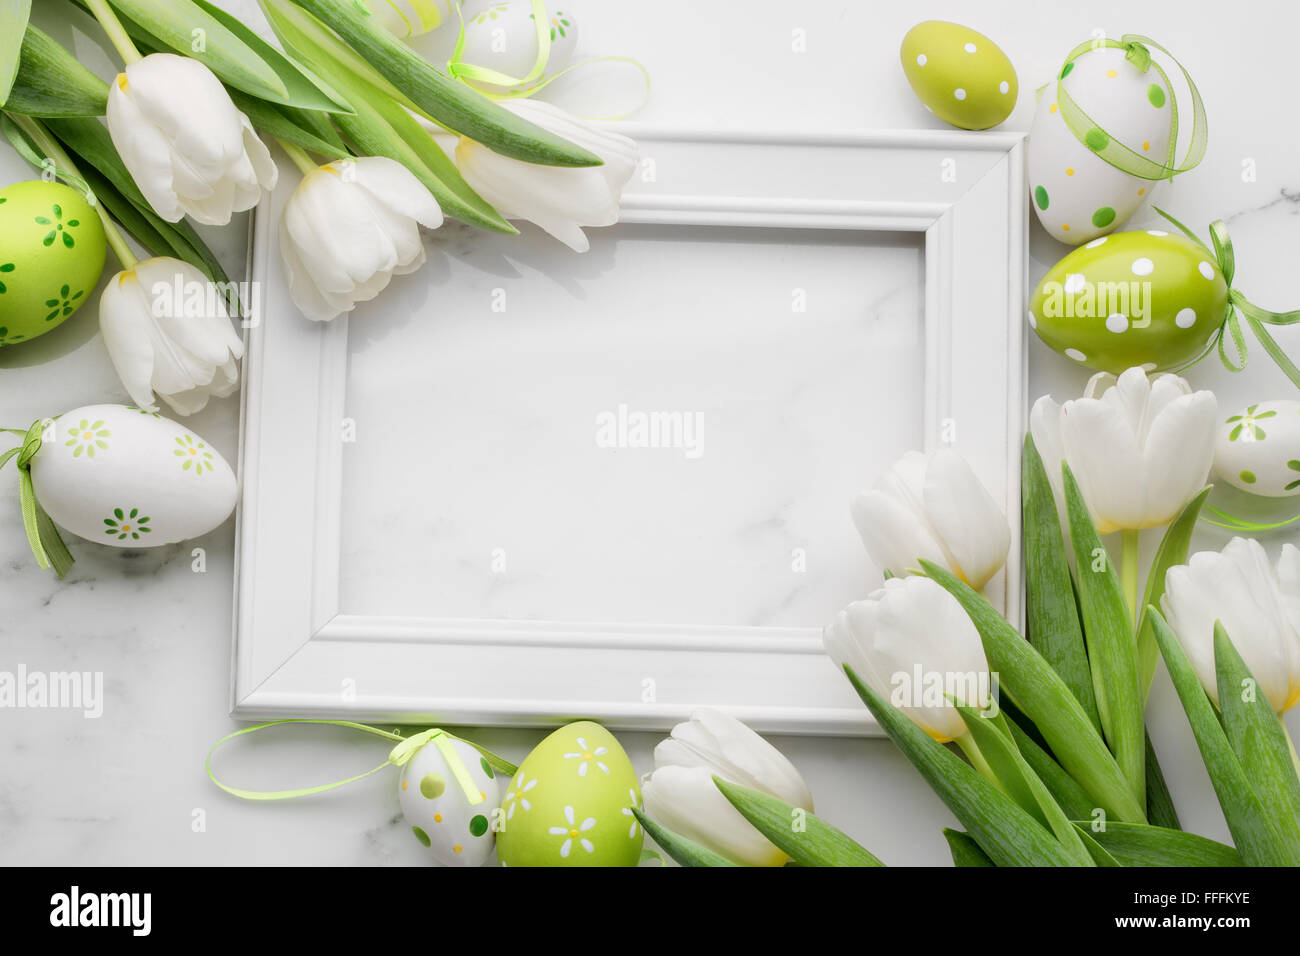 Tulip,oeufs de pâques et cadre photo Blanc sur fond de marbre blanc Banque D'Images